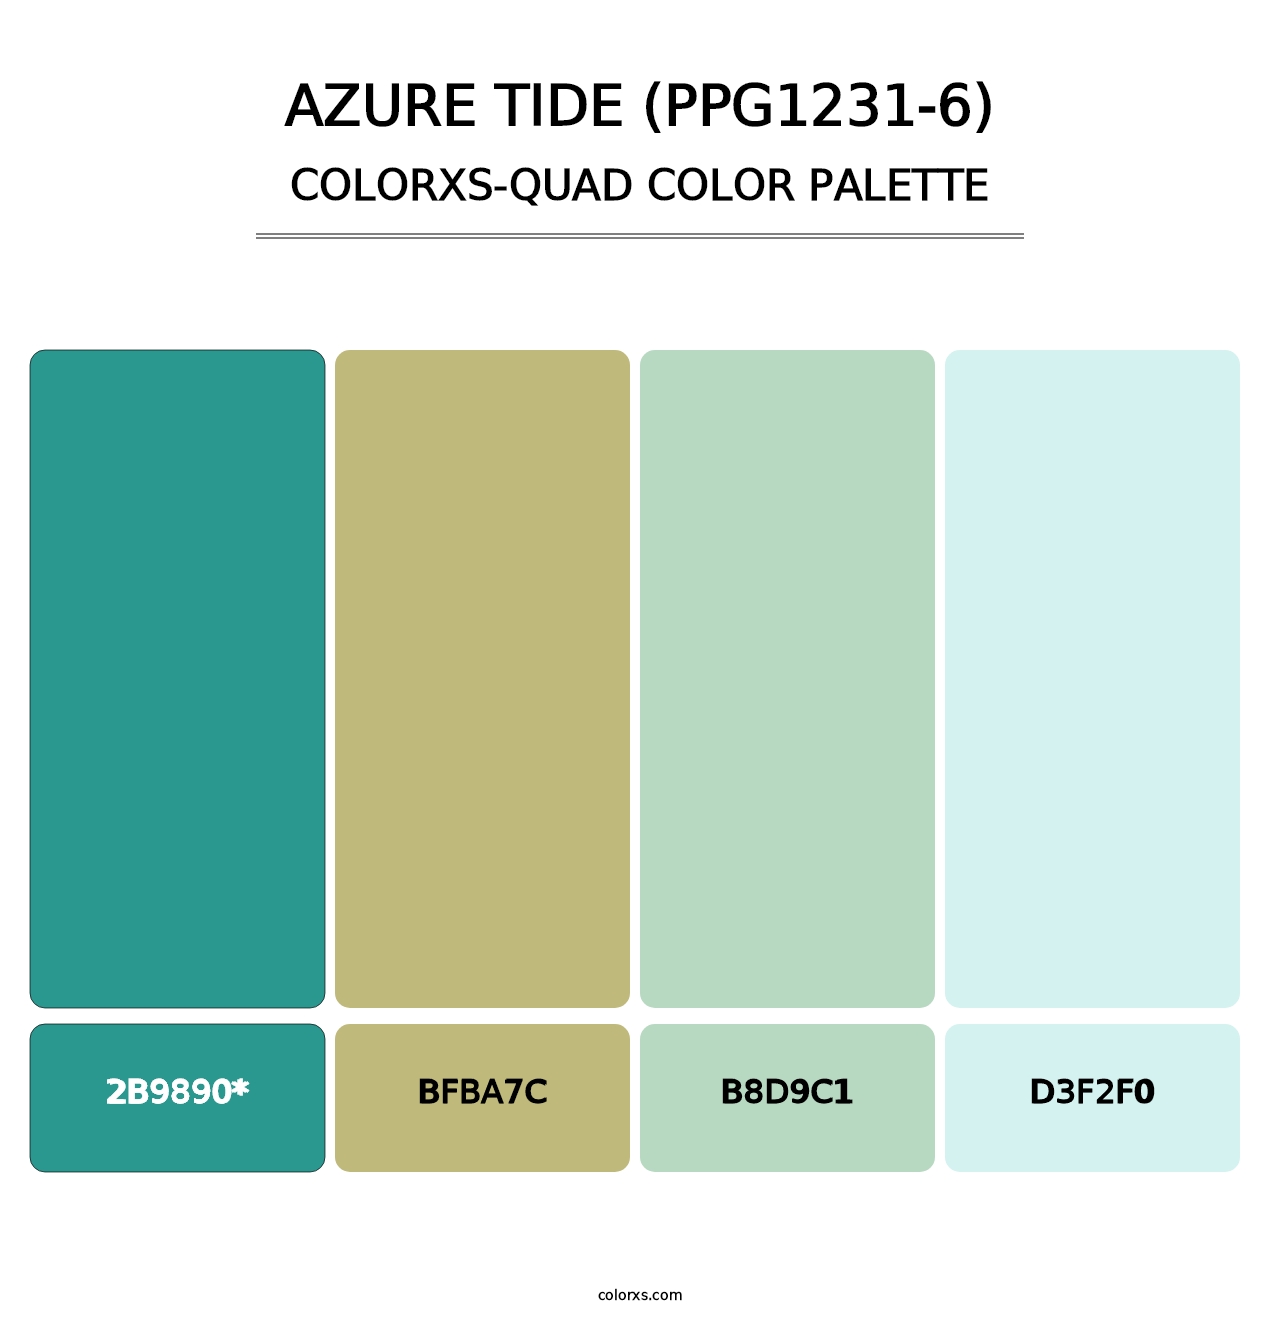 Azure Tide (PPG1231-6) - Colorxs Quad Palette